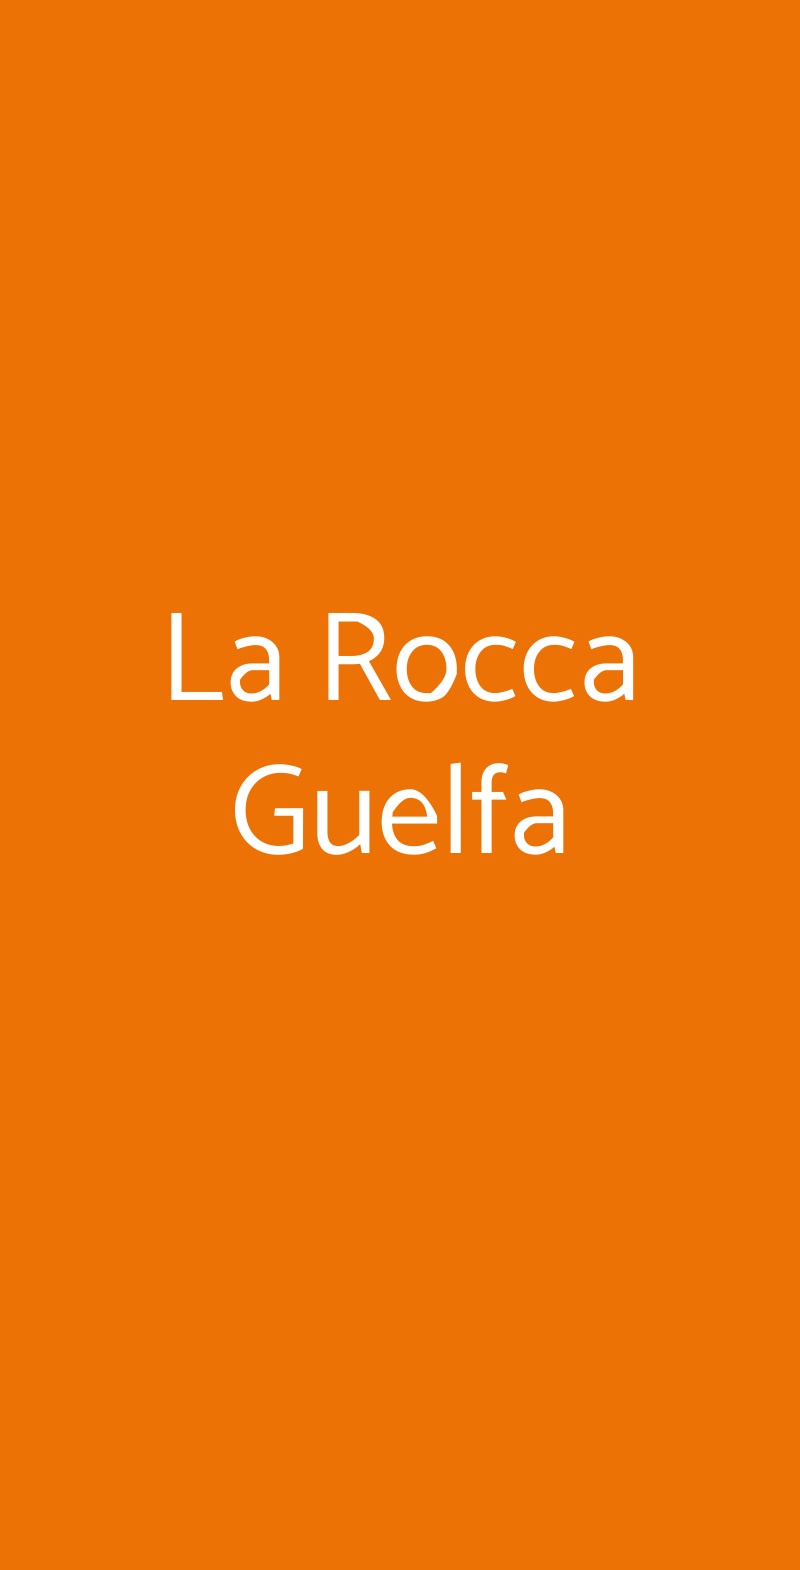 La Rocca Guelfa Castel Guelfo di Bologna menù 1 pagina